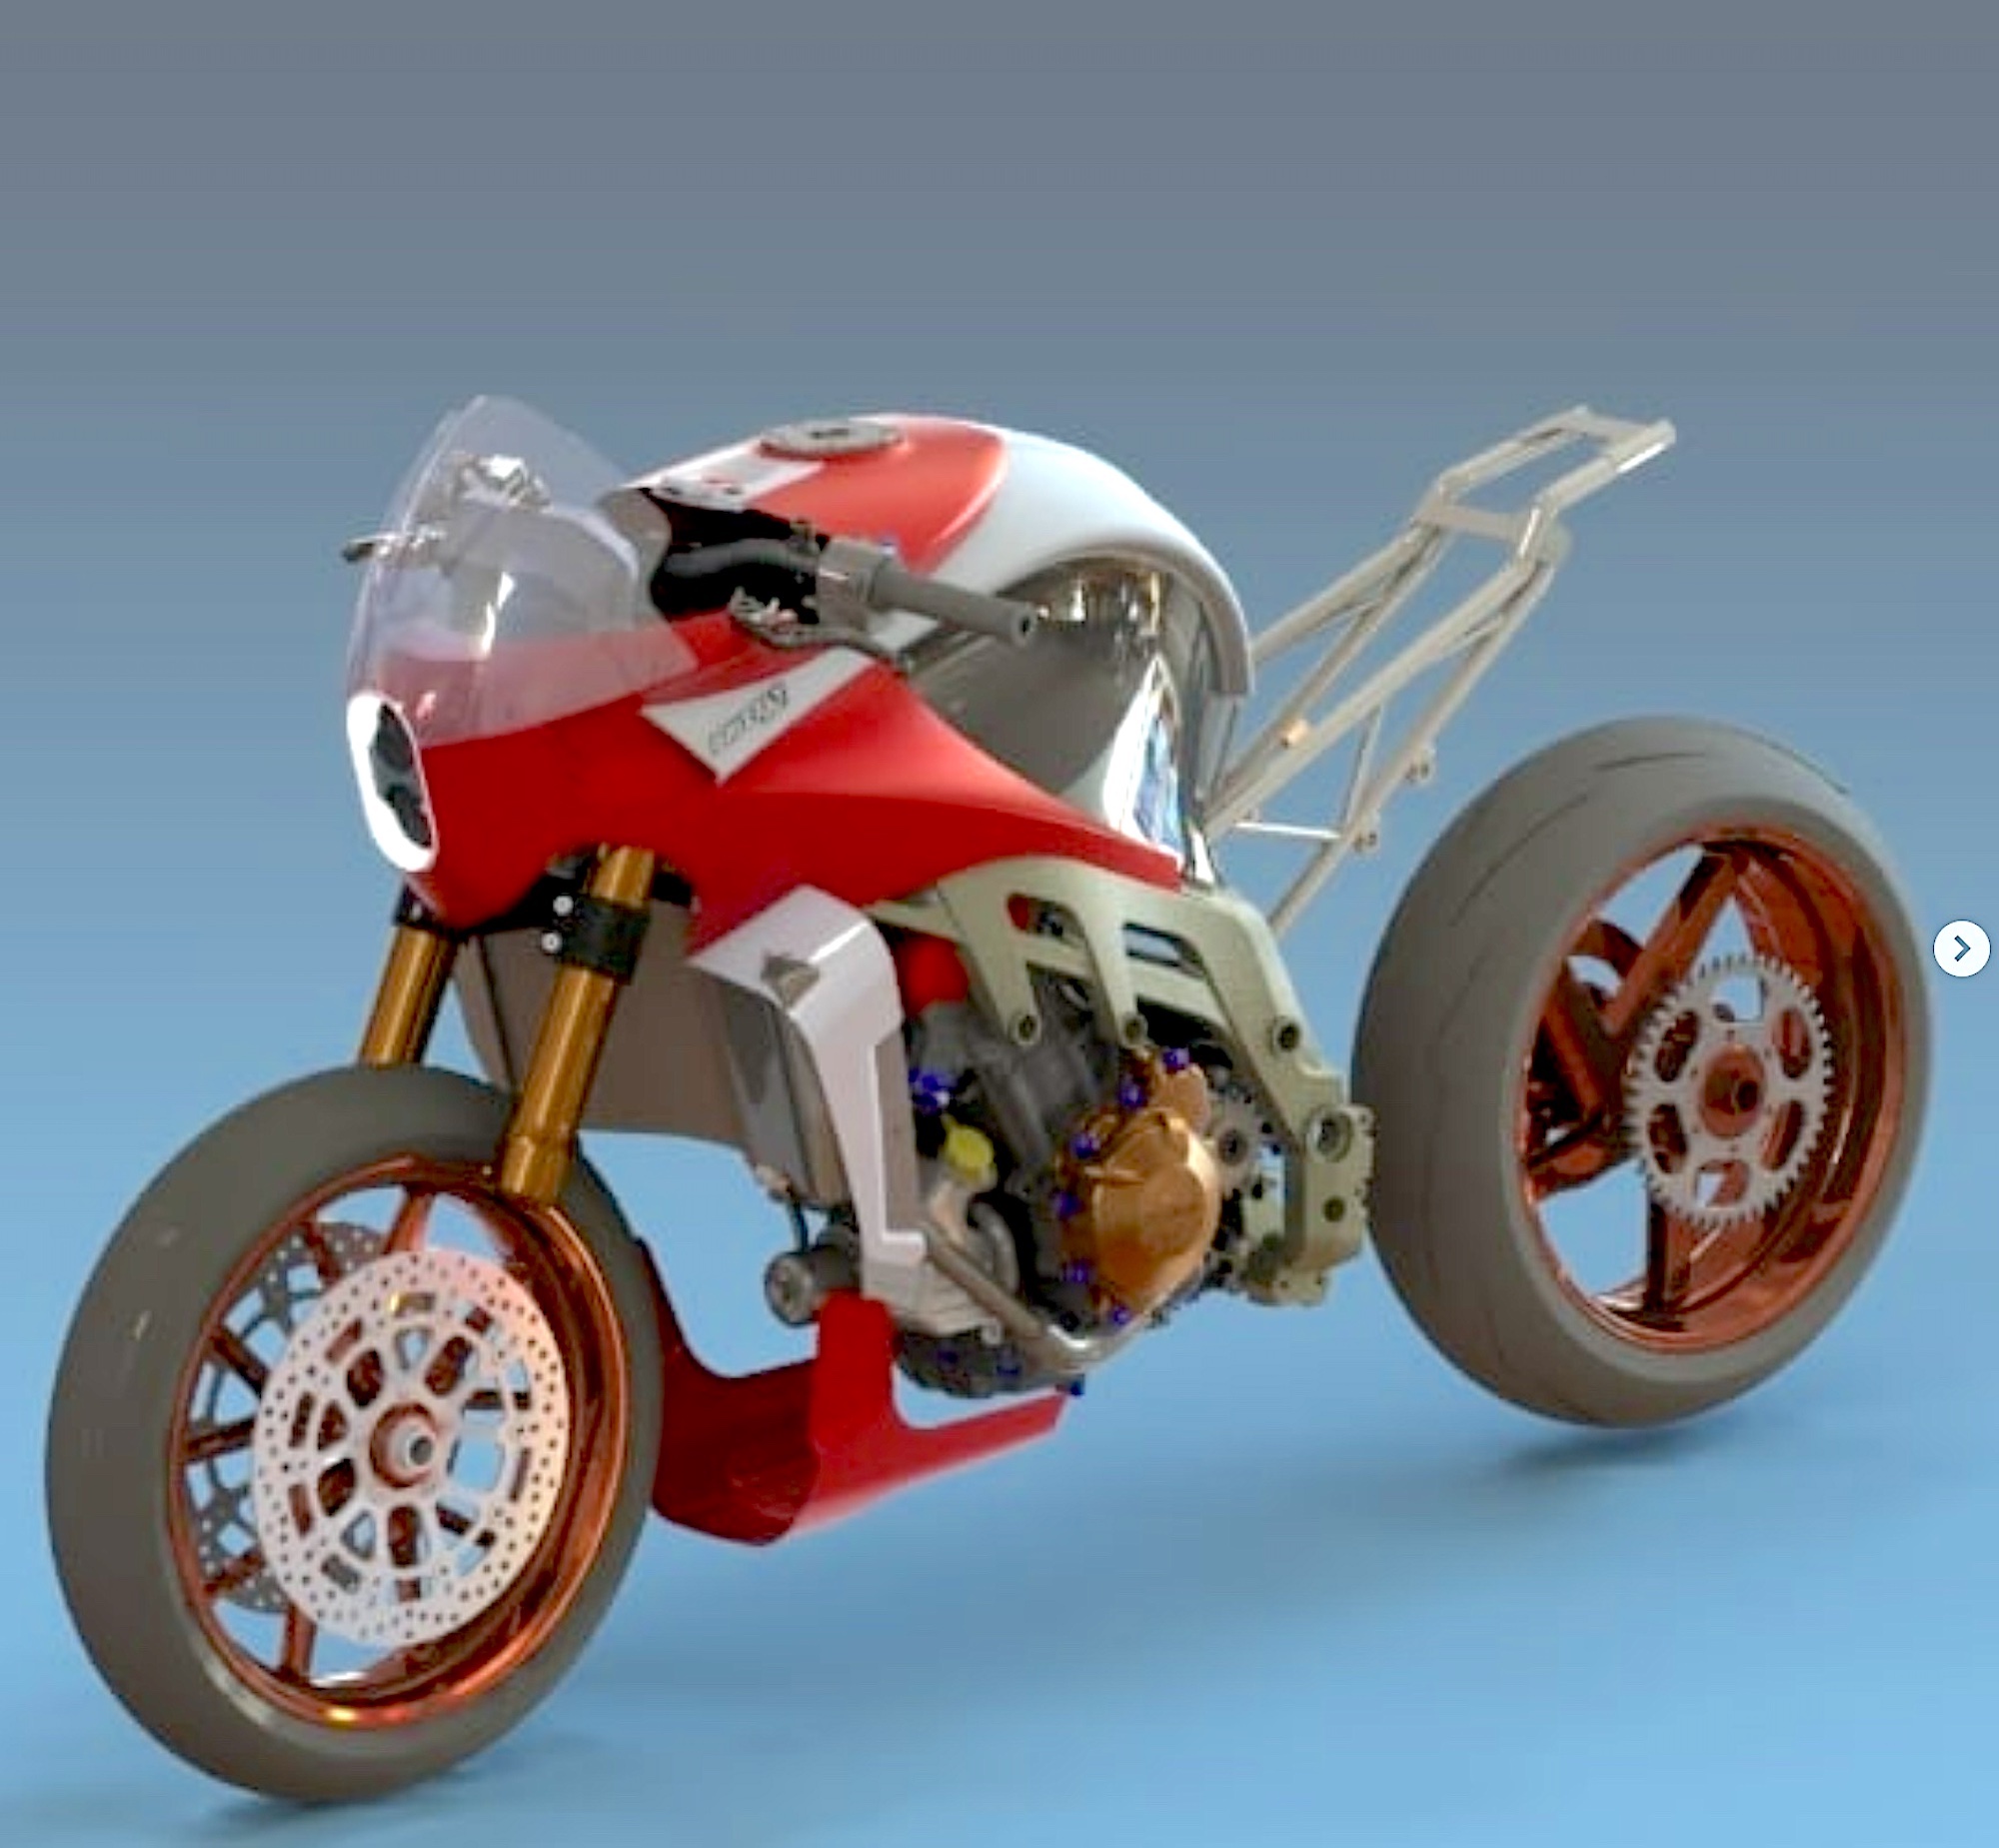 A motorcycle concept courtesy of Gerardo Rocha. 